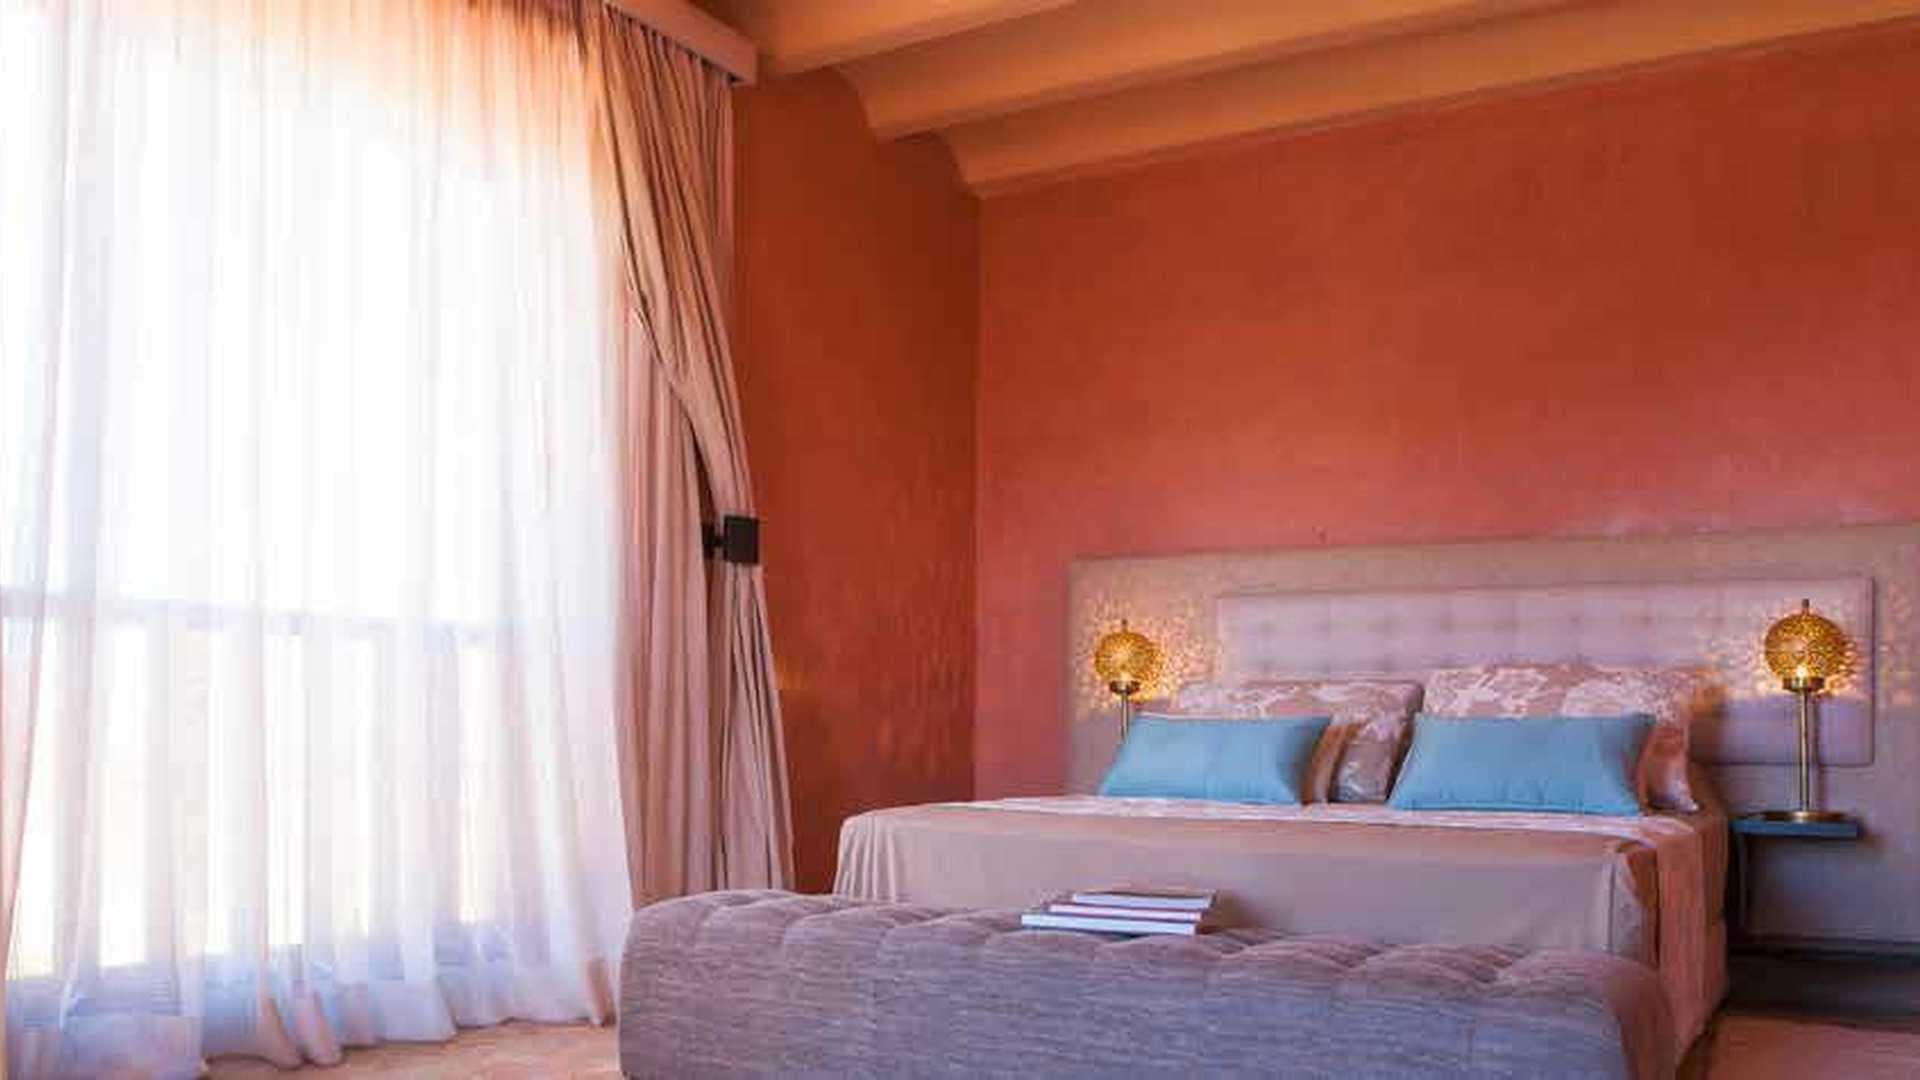 3 Bedroom Villa For Sale Mouyal Menzah Hattan Lp01071 1979f63f34386a00.jpg